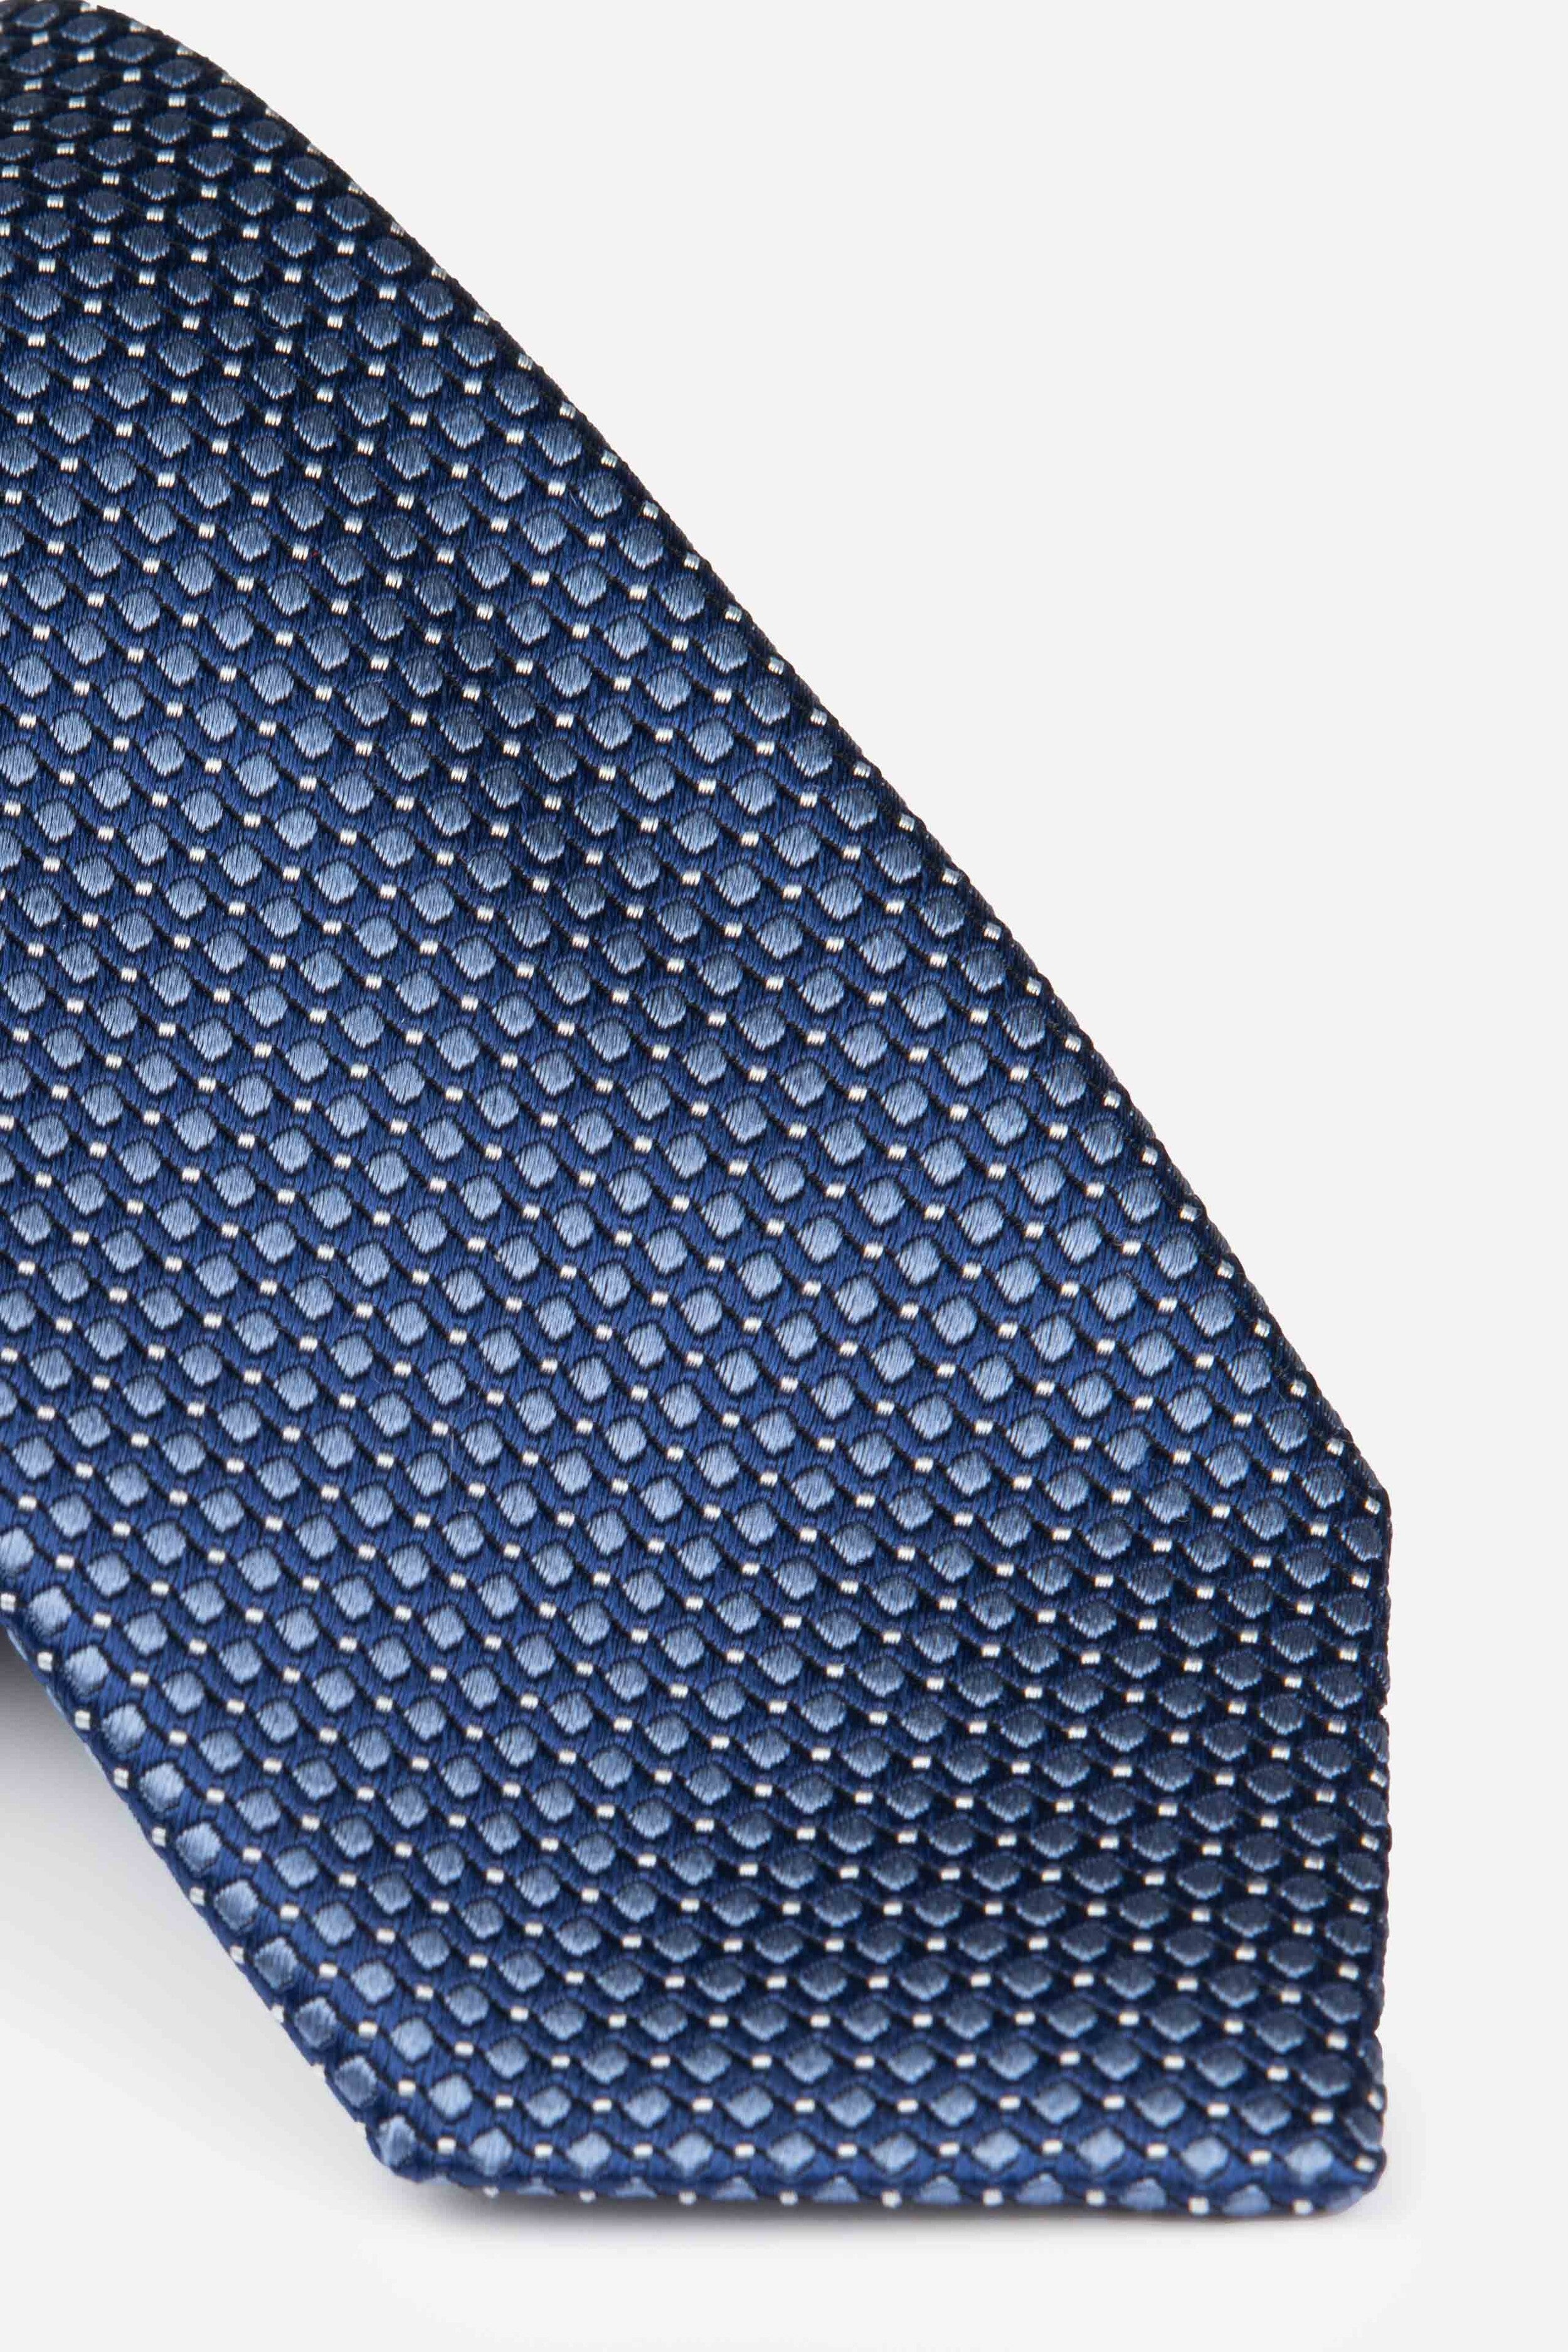 Blue patterned tie - Blue pattern